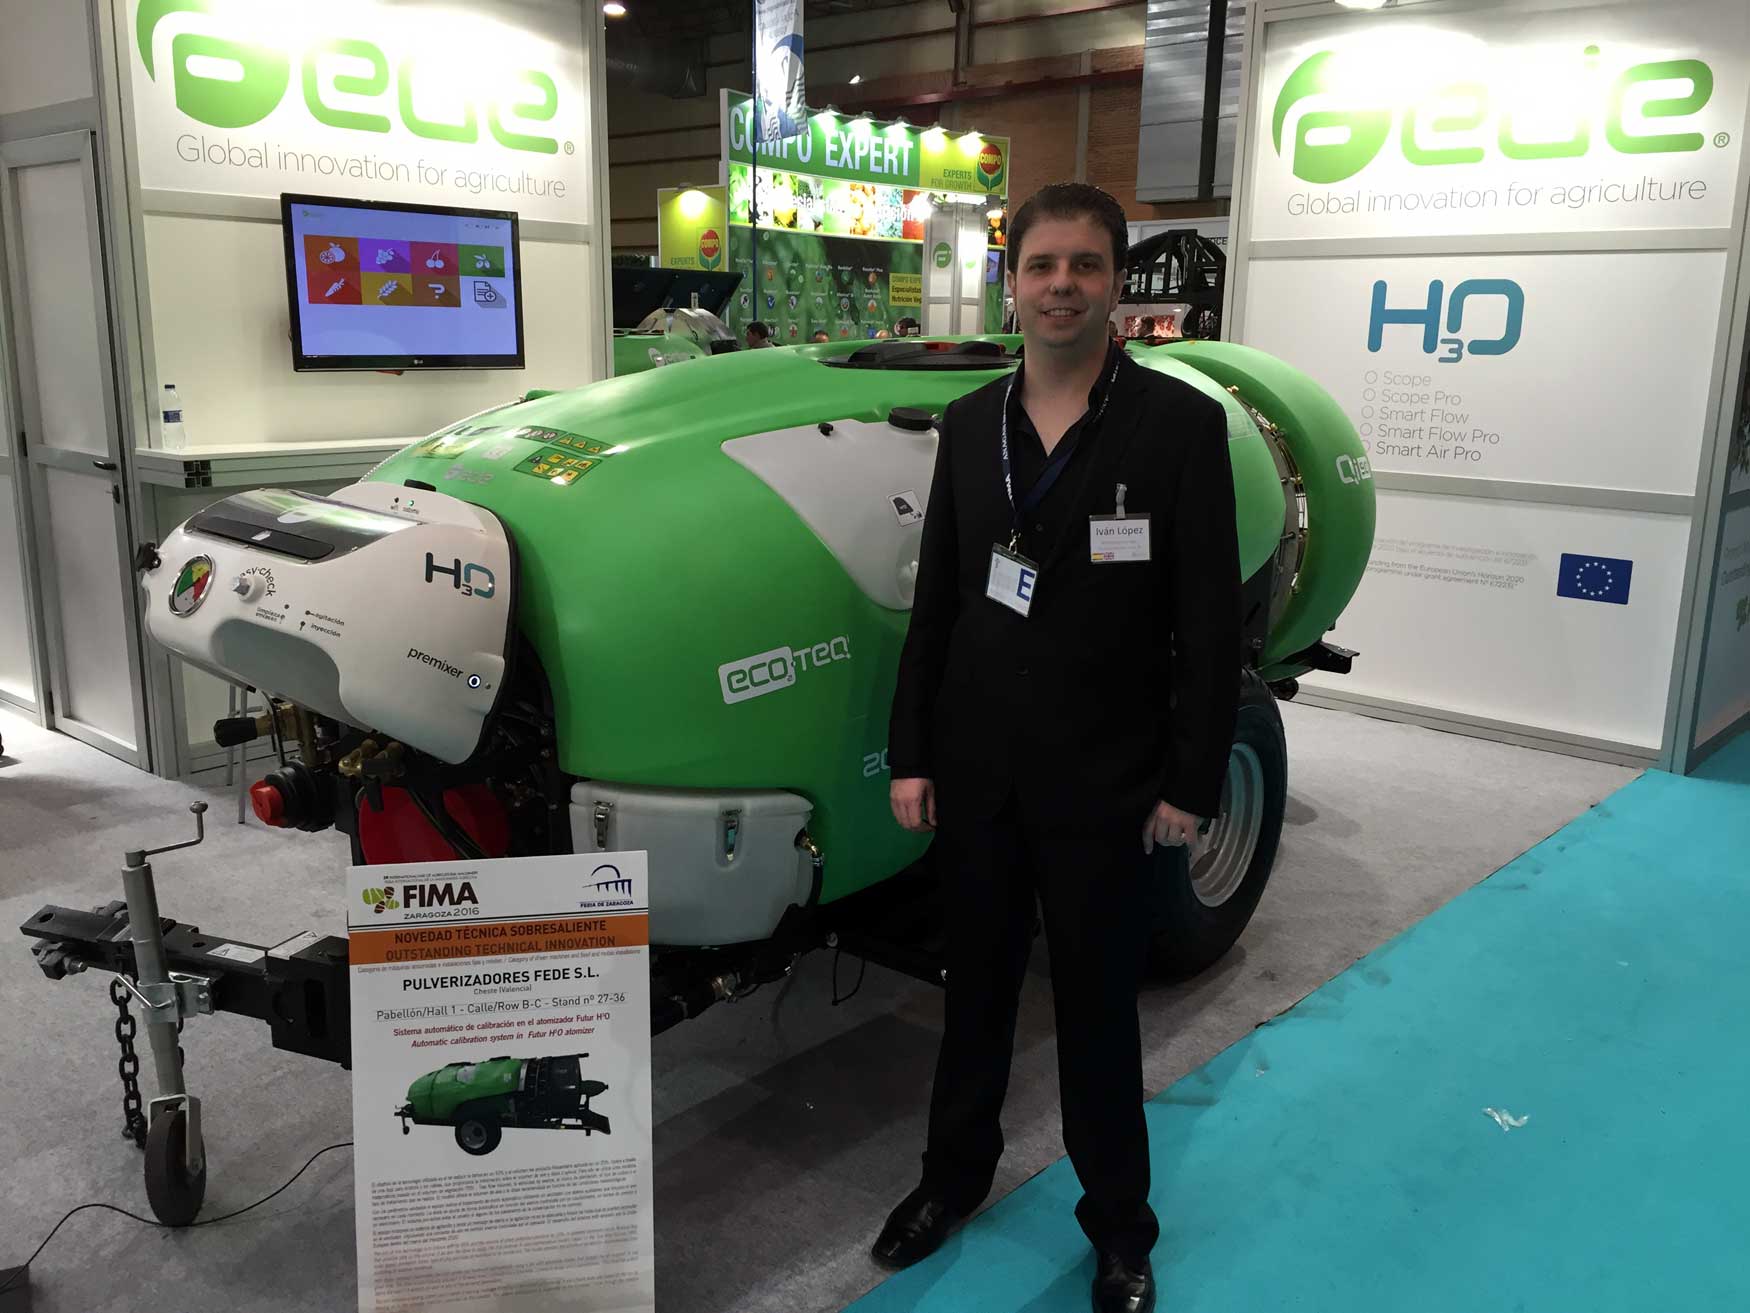 Ivn Lpez, director de Marketing, de Pulverizadores Fede, junto al atomizador con el sistema H3O